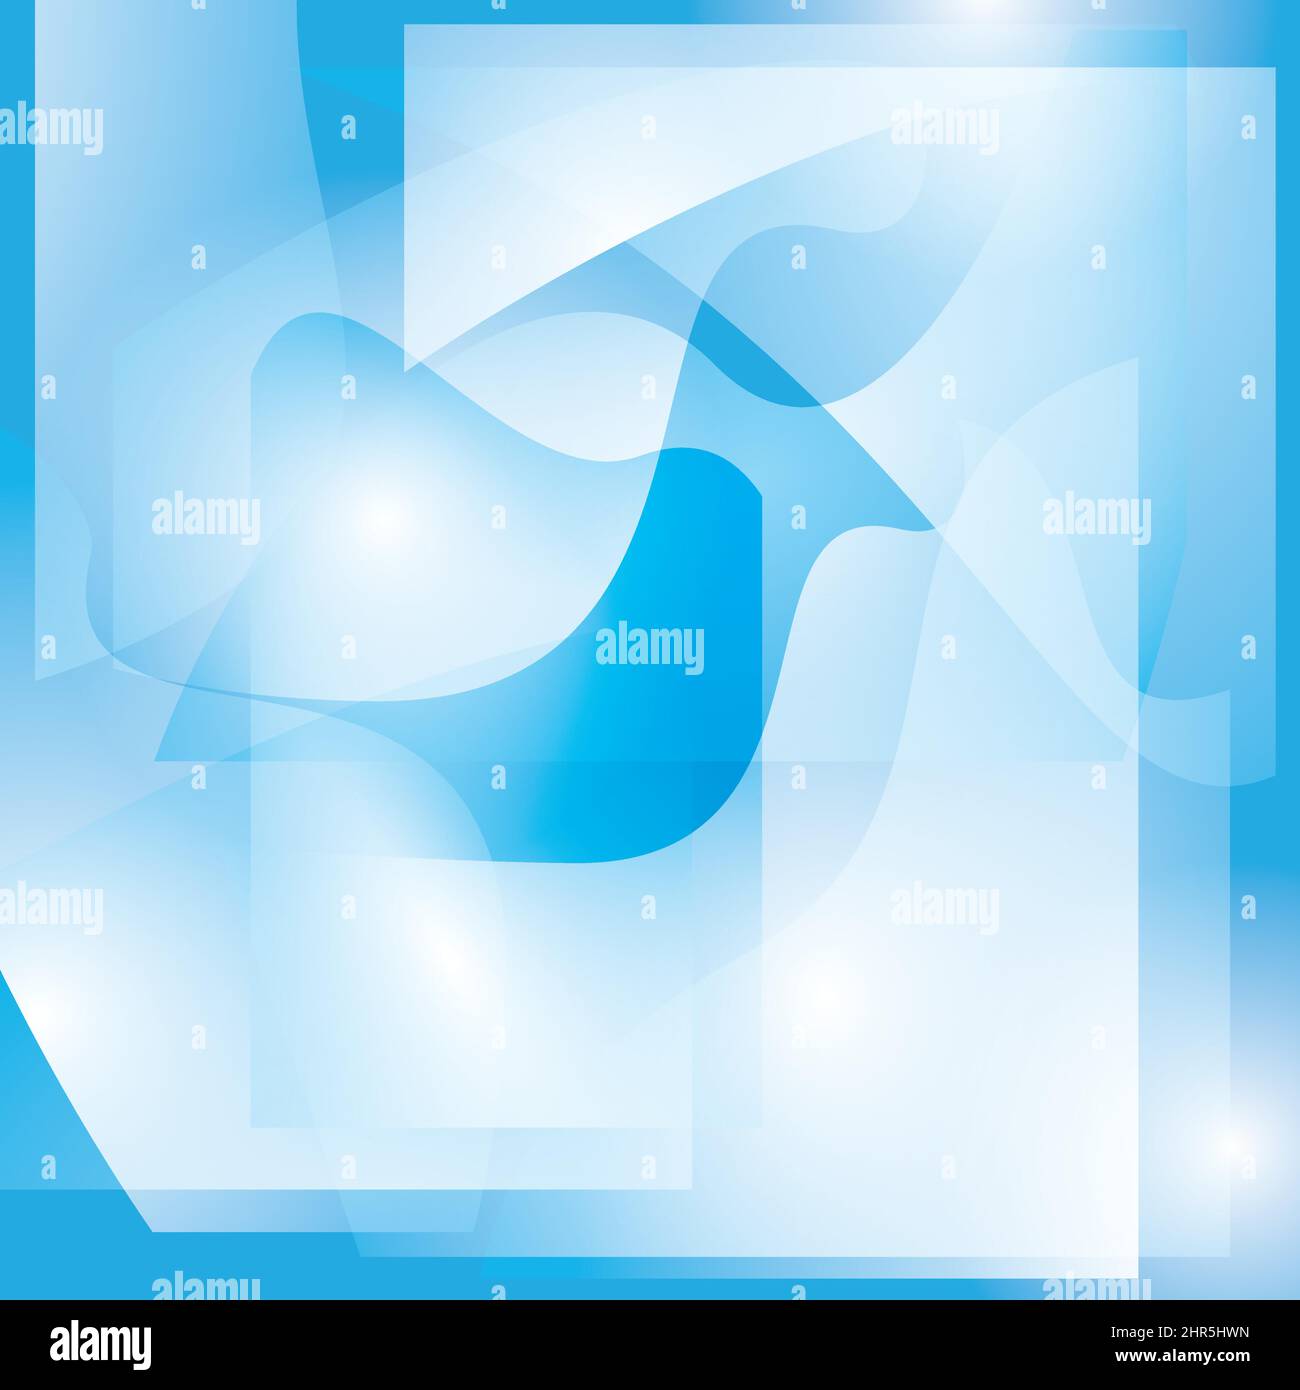 Abstrakt blau und weiß gewellter Hintergrund mit Formen - Vektor - eps 10 Stock Vektor